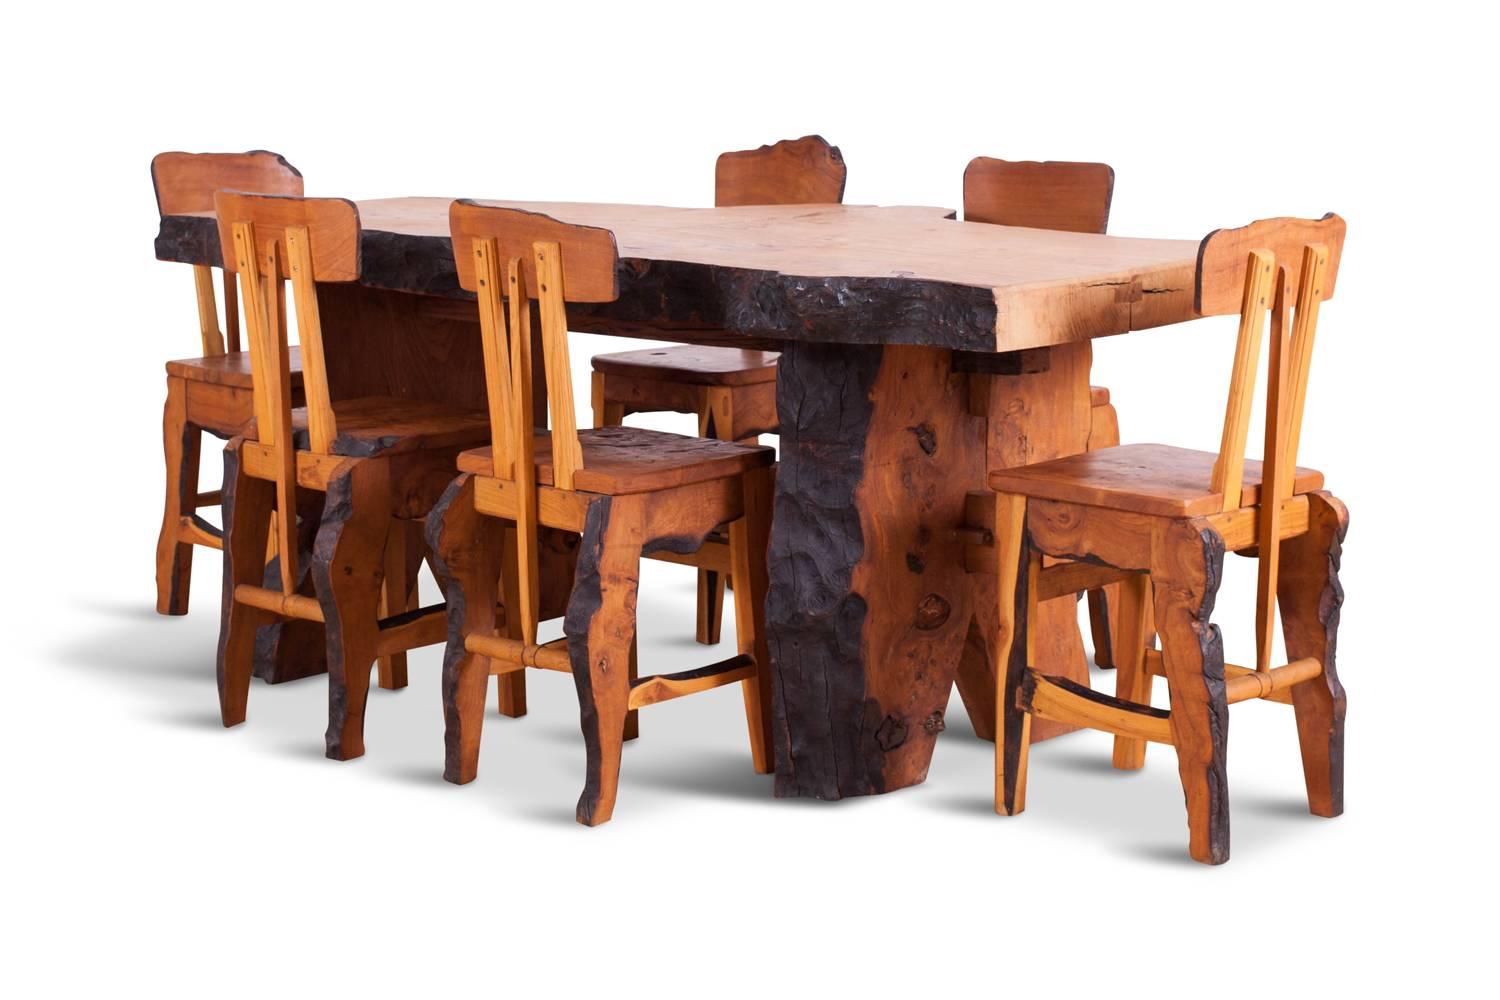 Wabi-Sabi-Esszimmer im Nakashima-Stil aus französischer Ulme (ausgestorben)
passender Tisch und Stühle, die in einem Atelier Français in den 1960er Jahren entworfen wurden
Der handwerkliche Charakter verleiht Ihrer Einrichtung eine ganz